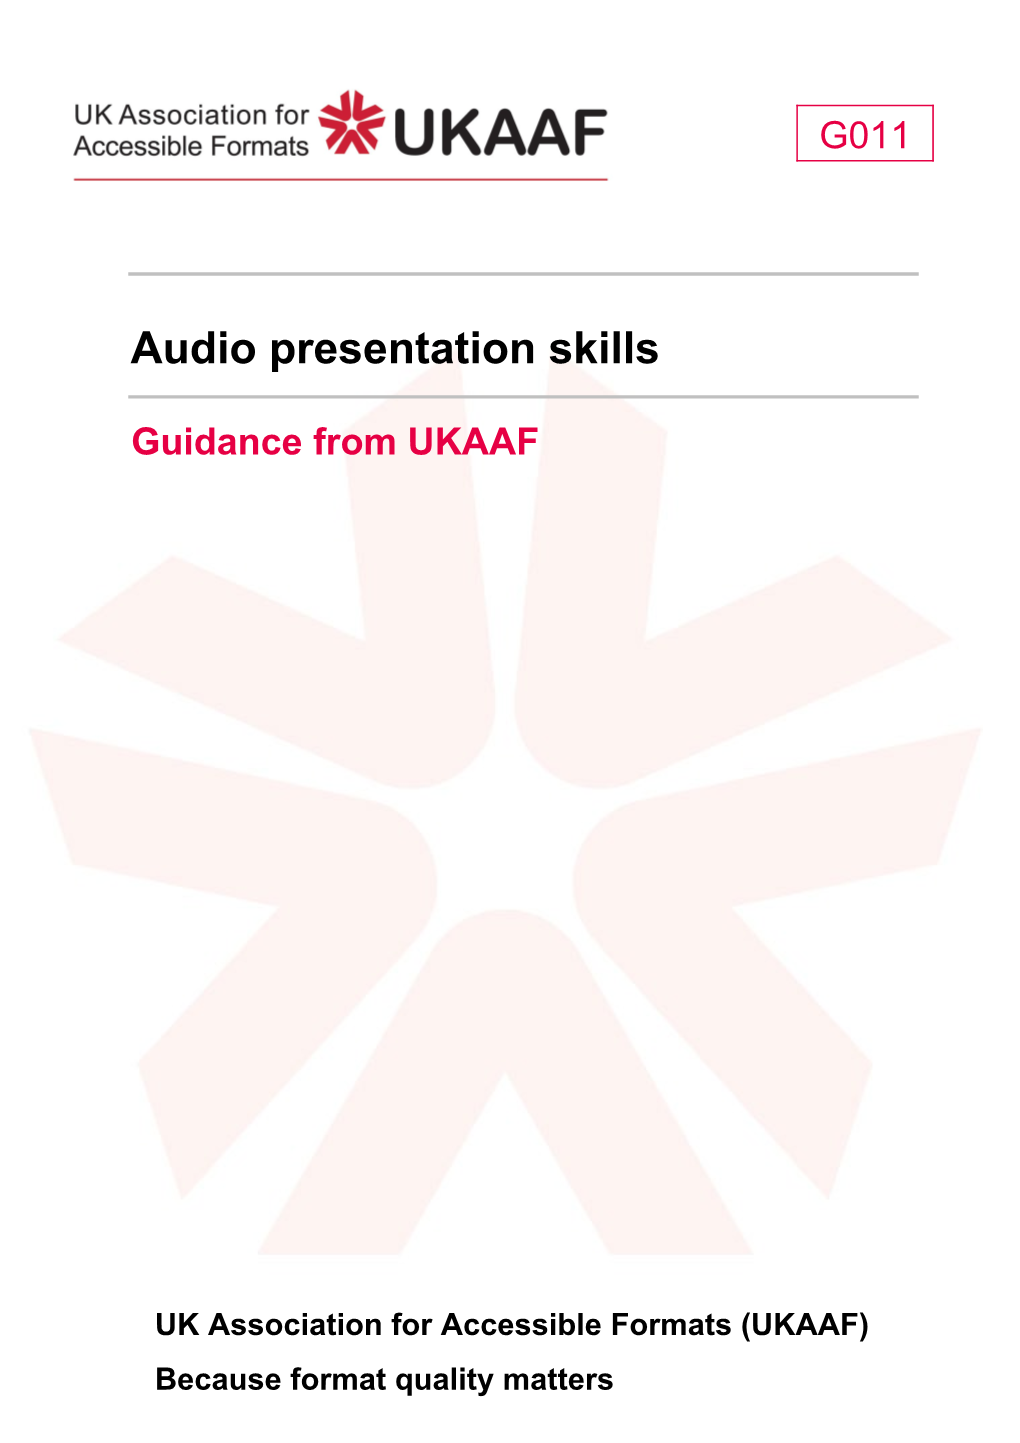 G011 Audio Presentation Skills